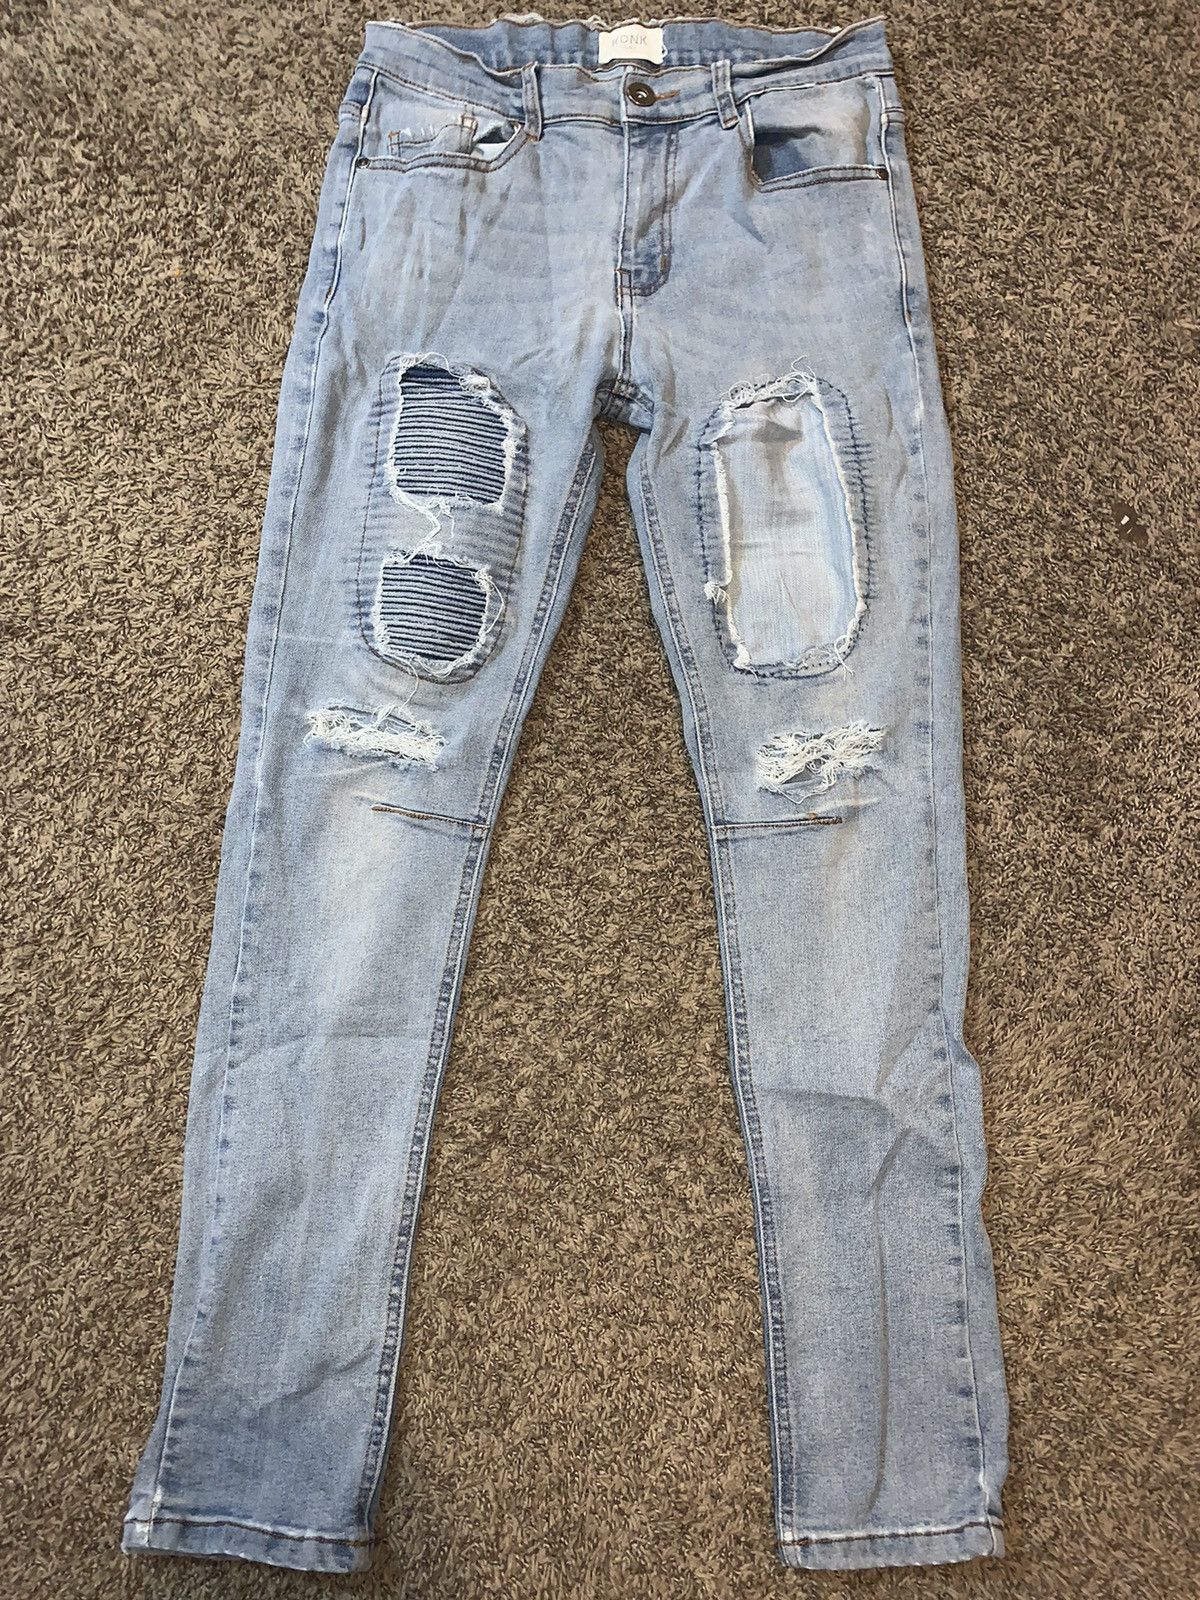 Vintage Kdnk jeans | Grailed